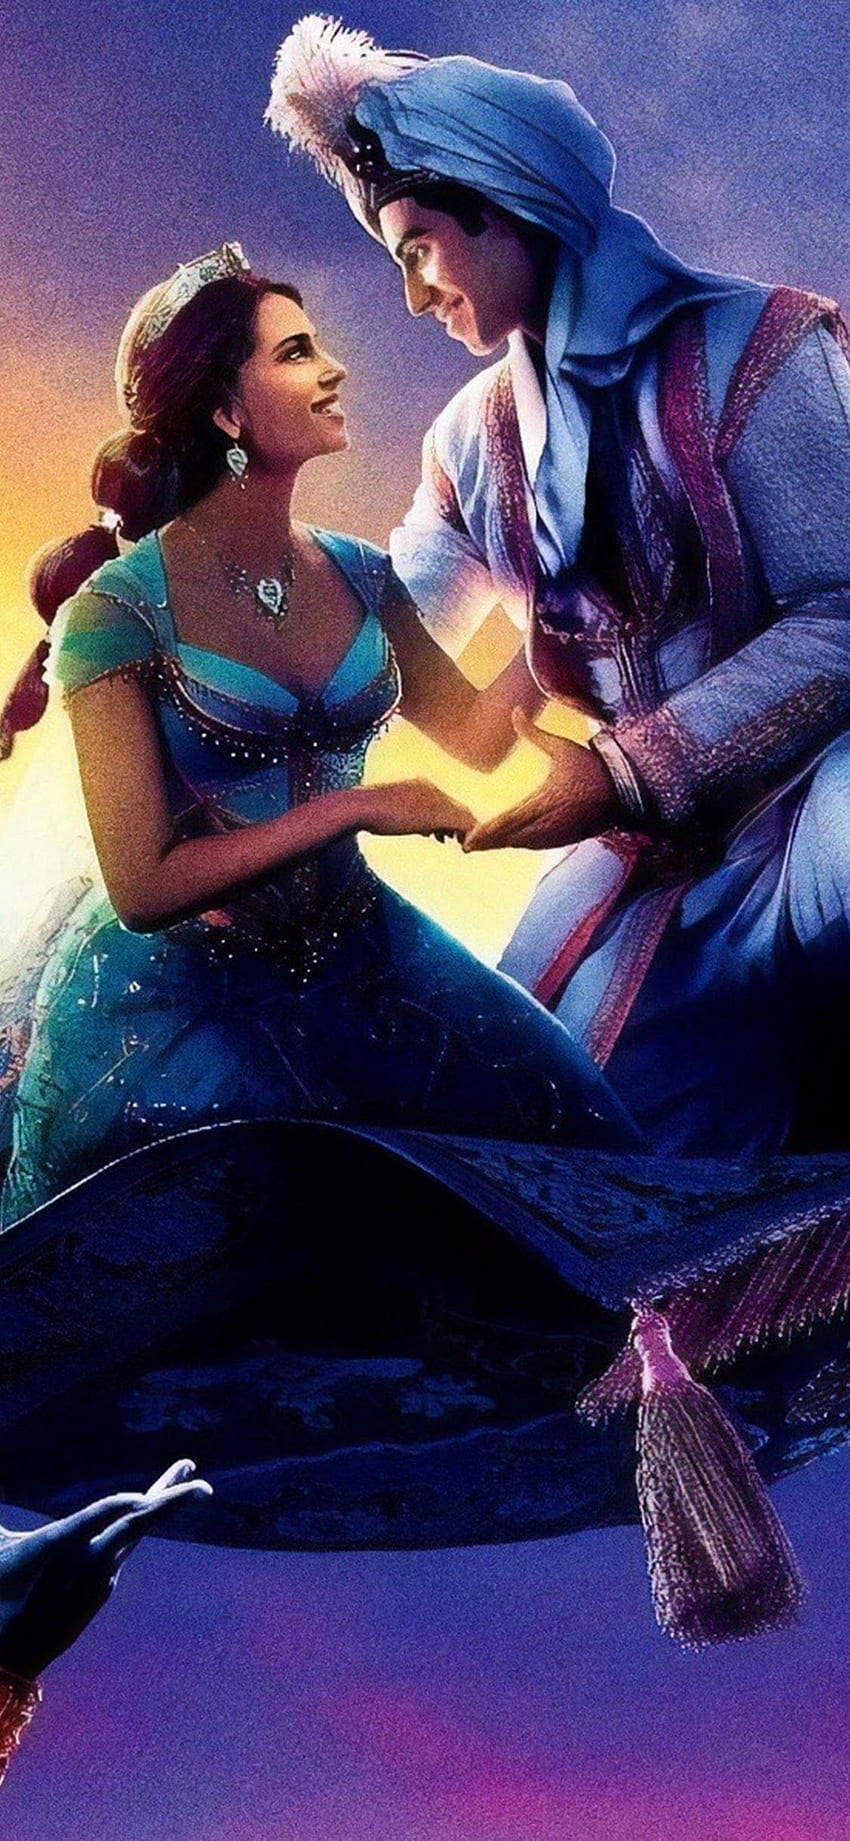 Aladdin 2019 Genio Jasmine Aladdin fondo de pantalla del teléfono | Pxfuel